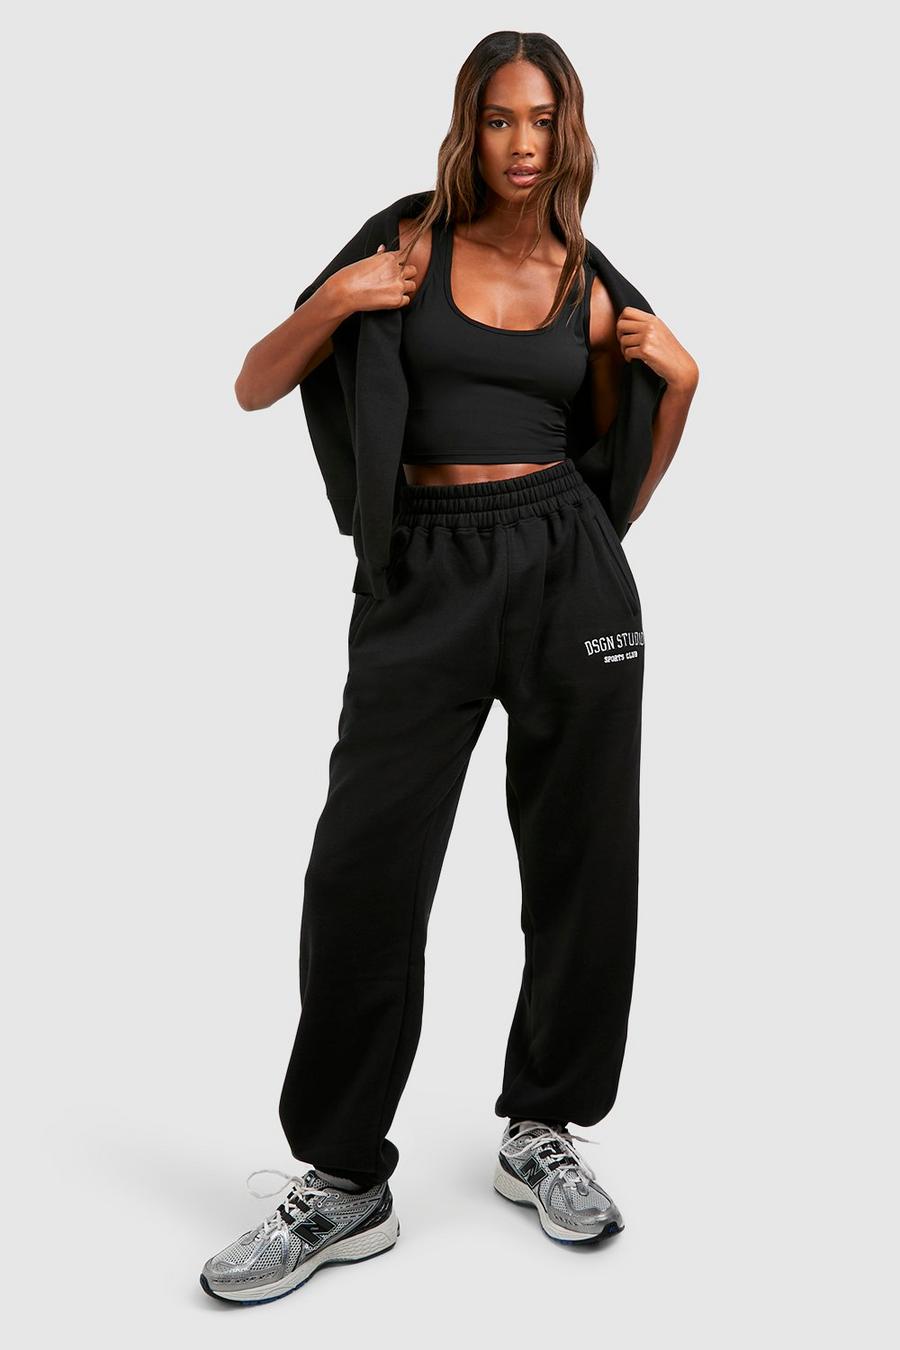 Pantaloni tuta oversize Dsgn Studio con applique, Black